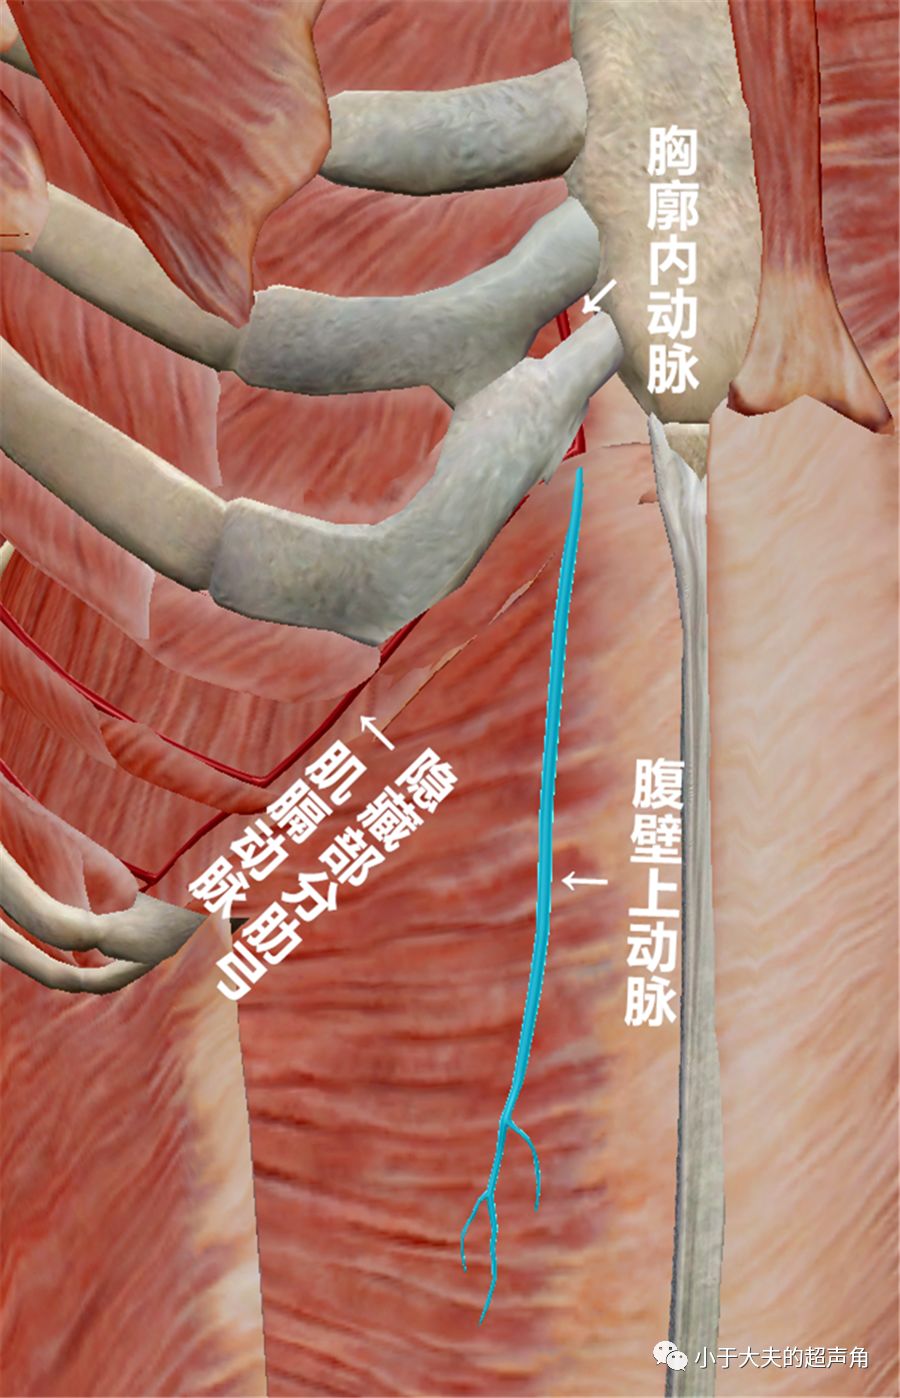 和肌膈动脉,前者继续下行于腹直肌深方紧邻处,而后者则走行于肋弓深方